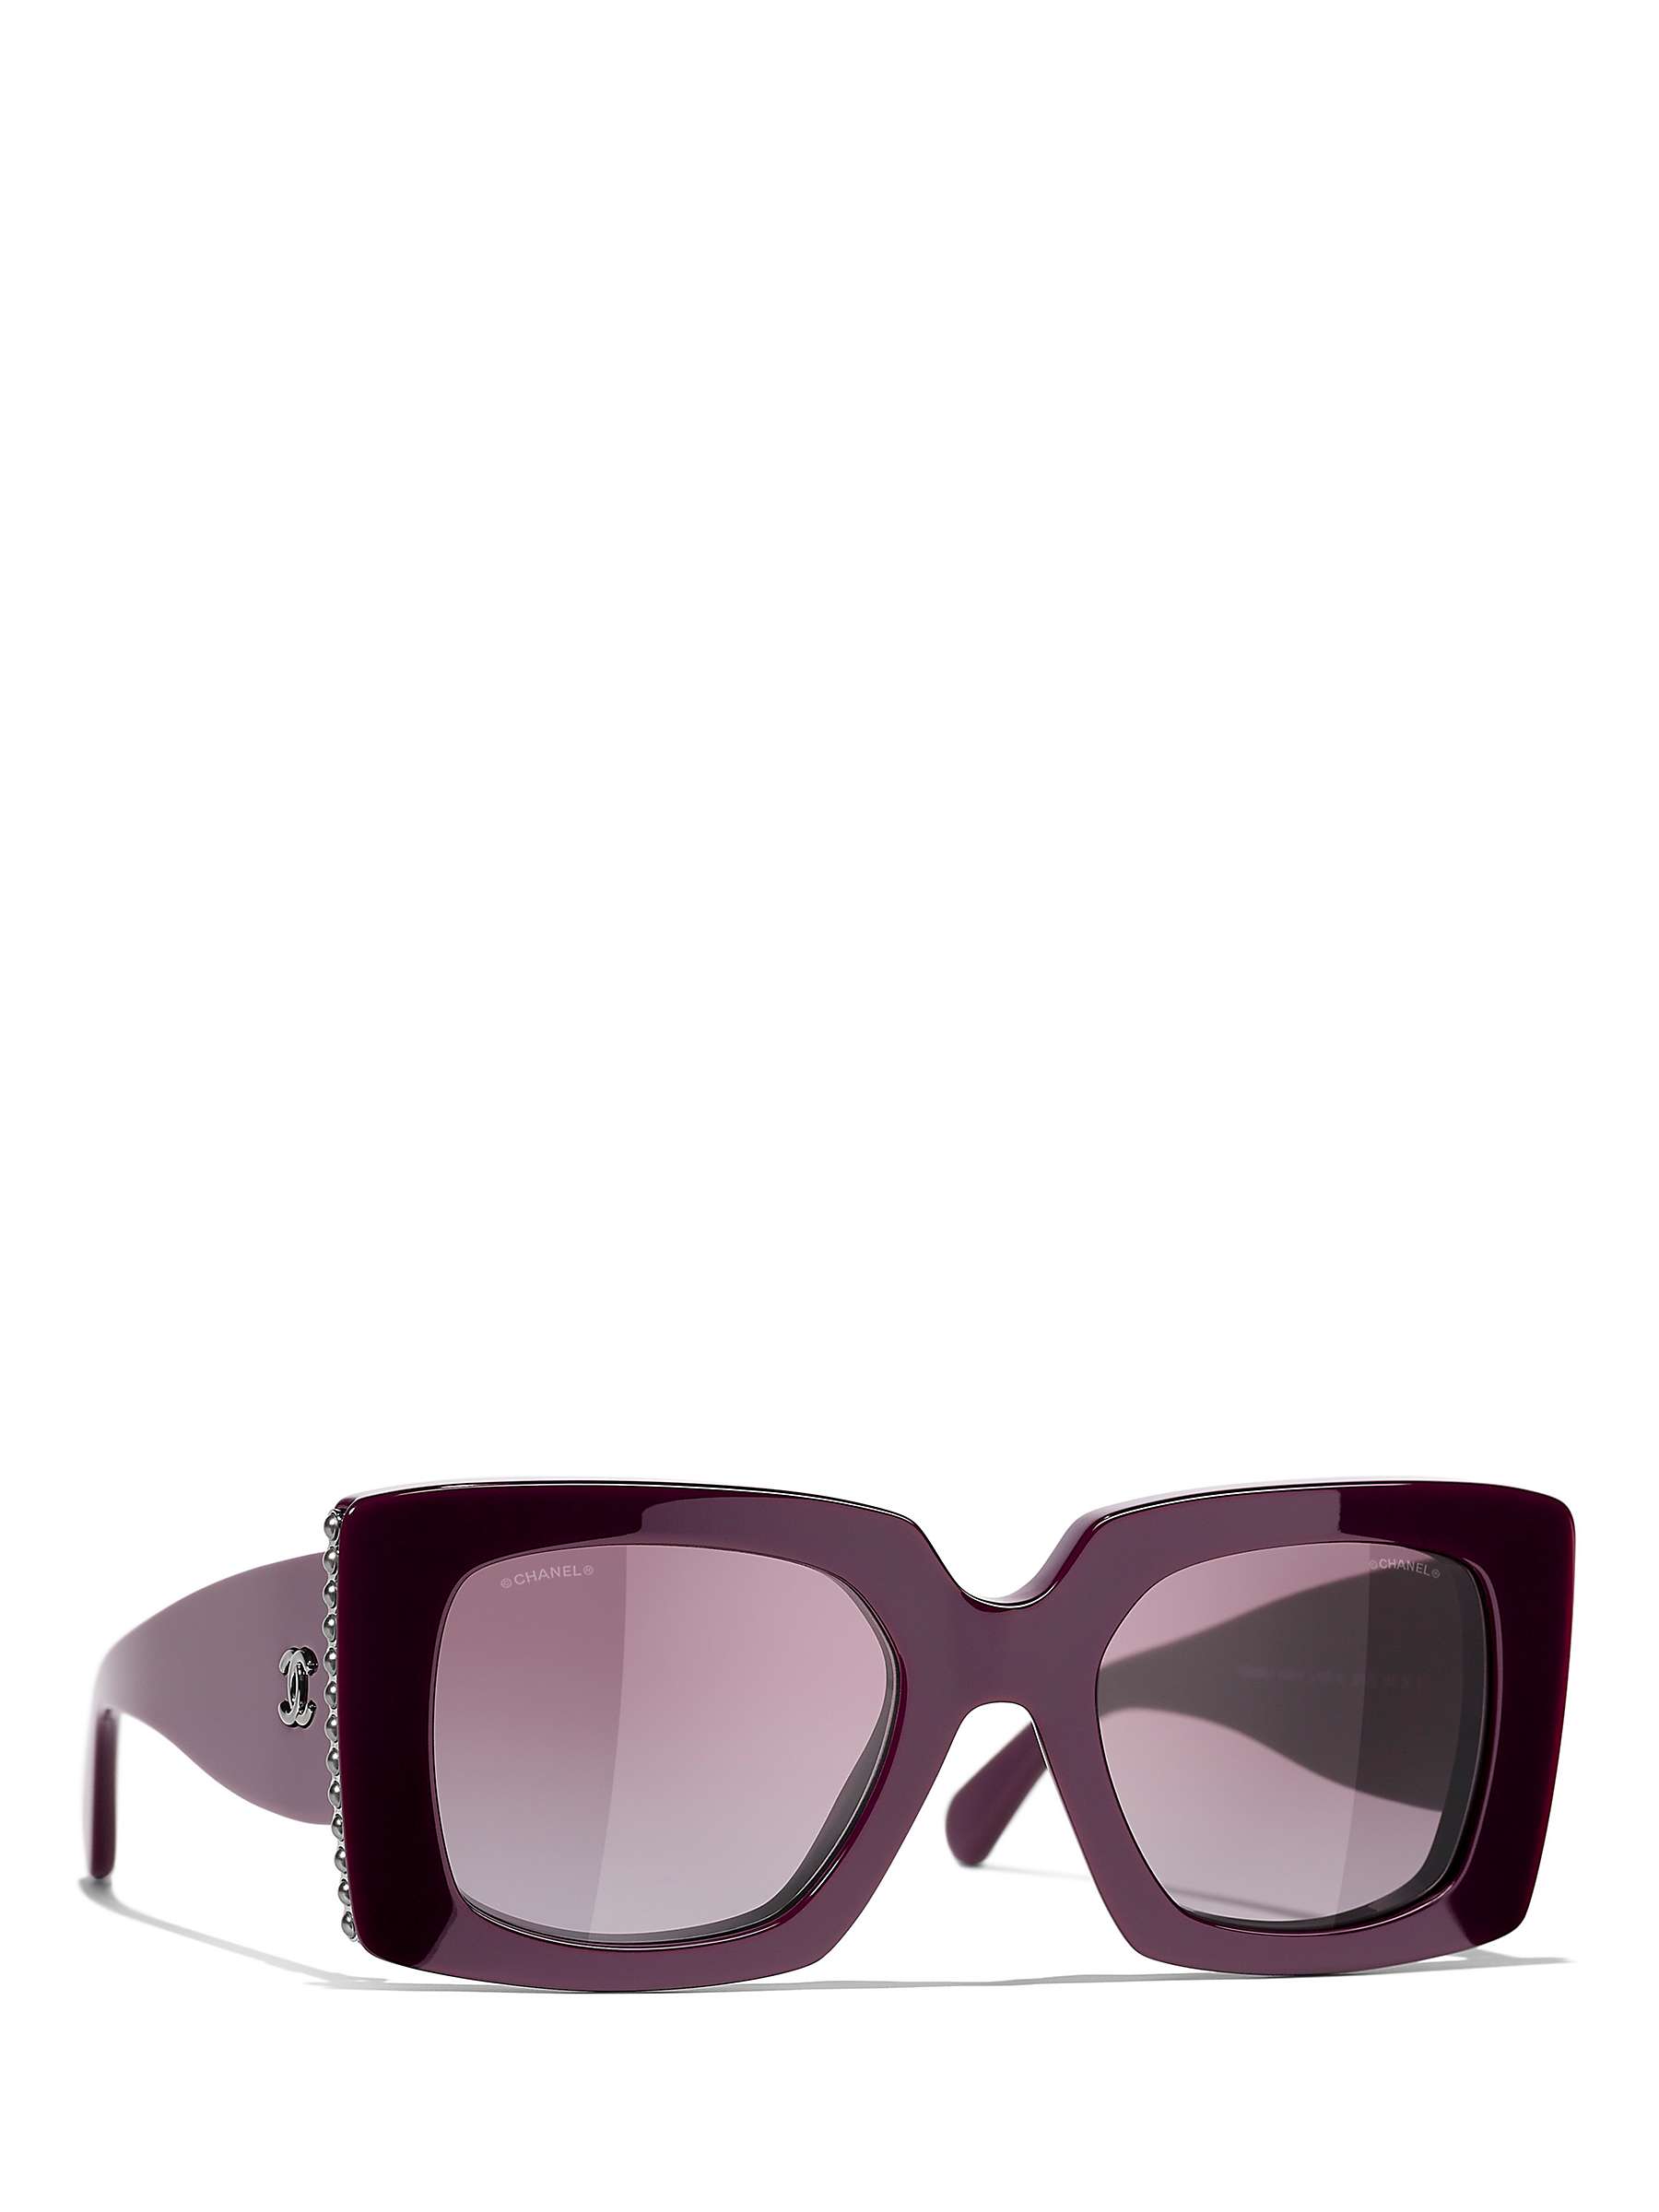 Buy CHANEL Rectangular Sunglasses CH5480H Bordeaux/Violet Gradient Online at johnlewis.com